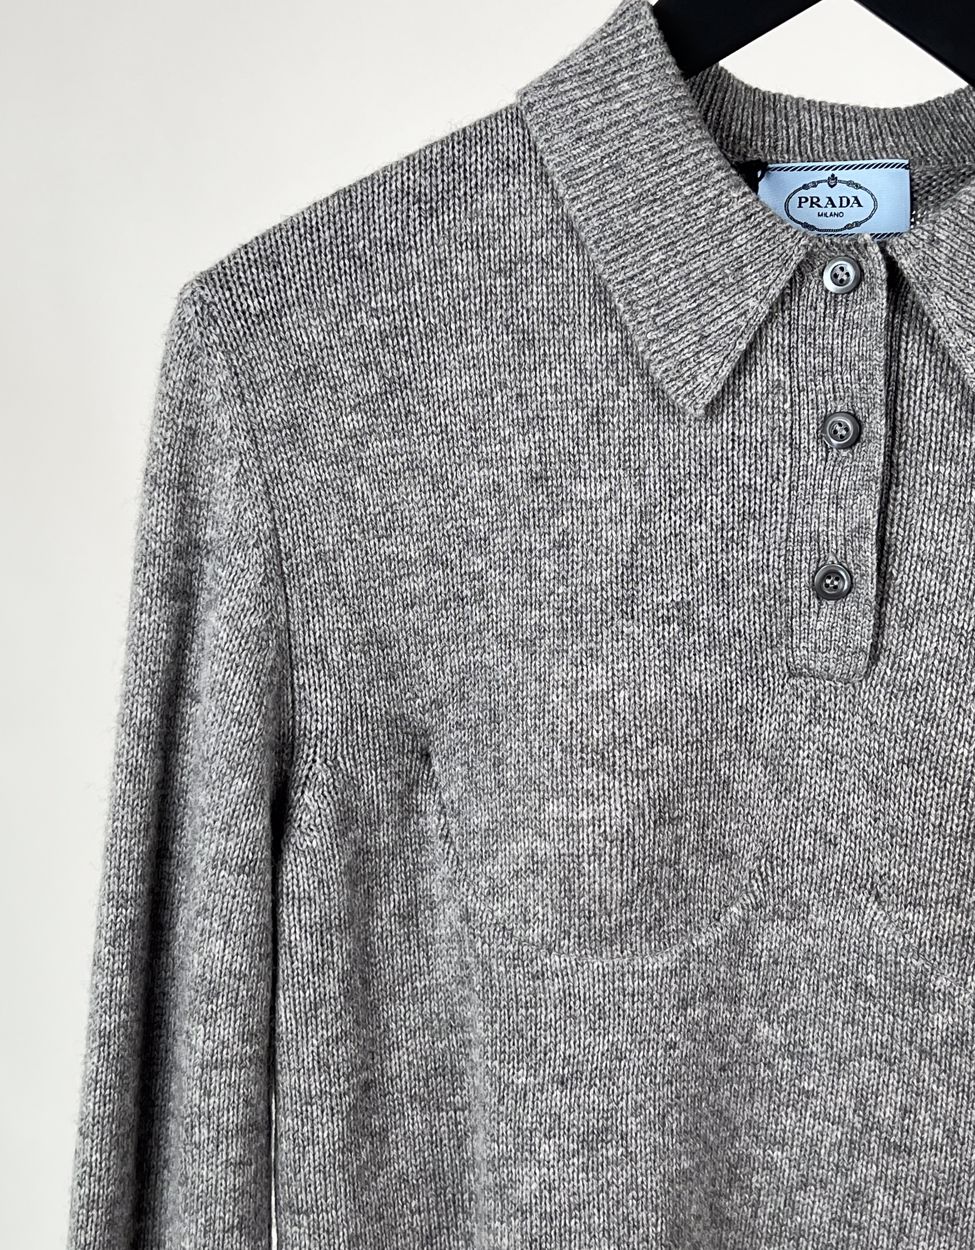 Prada cashmere polo knit grey size xs